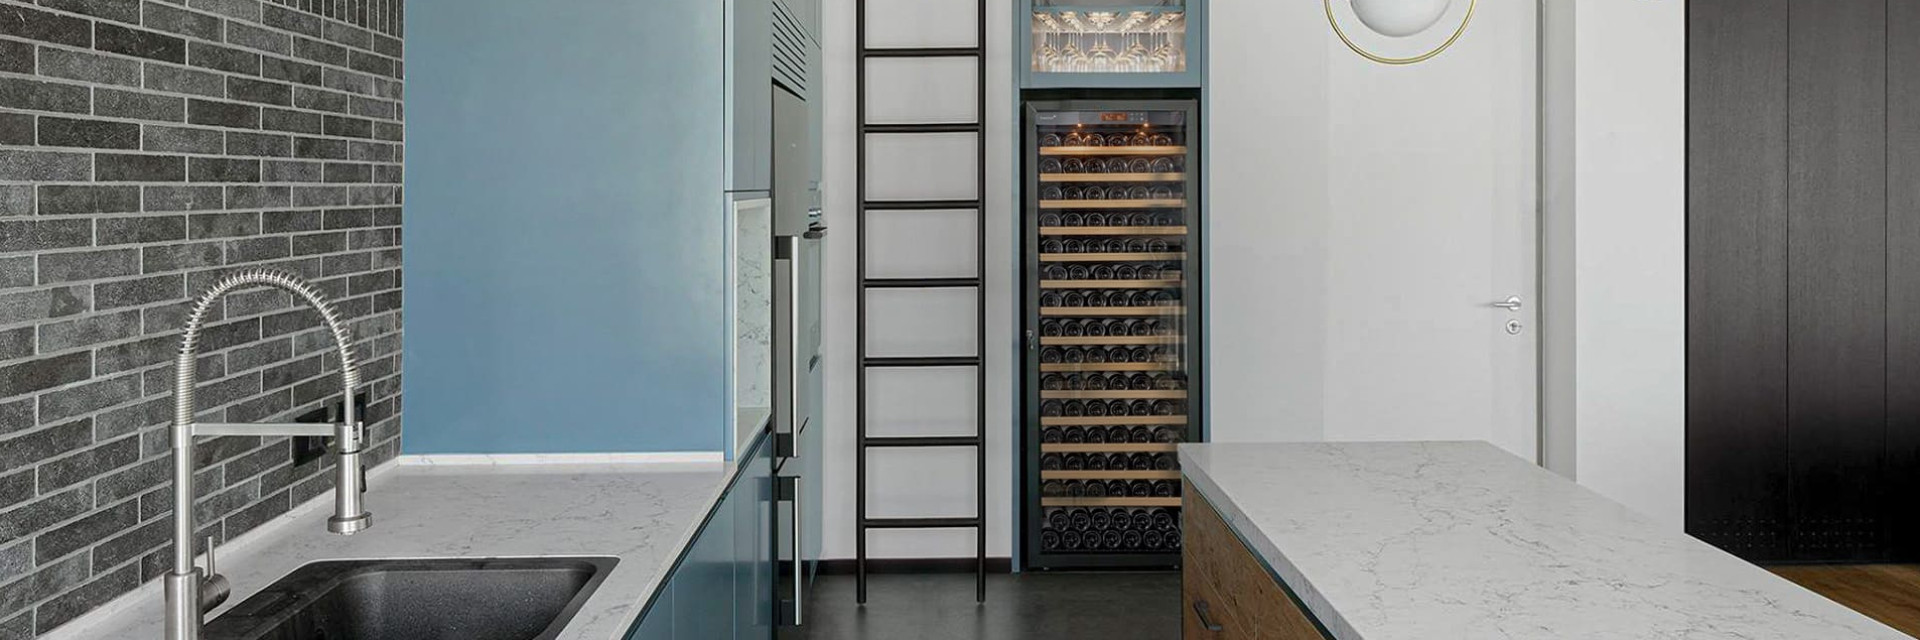 Frigo à vin encastré dans sa cuisine pour une grande capacité de bouteilles conservées à température de service. - Gamme Pure EuroCave